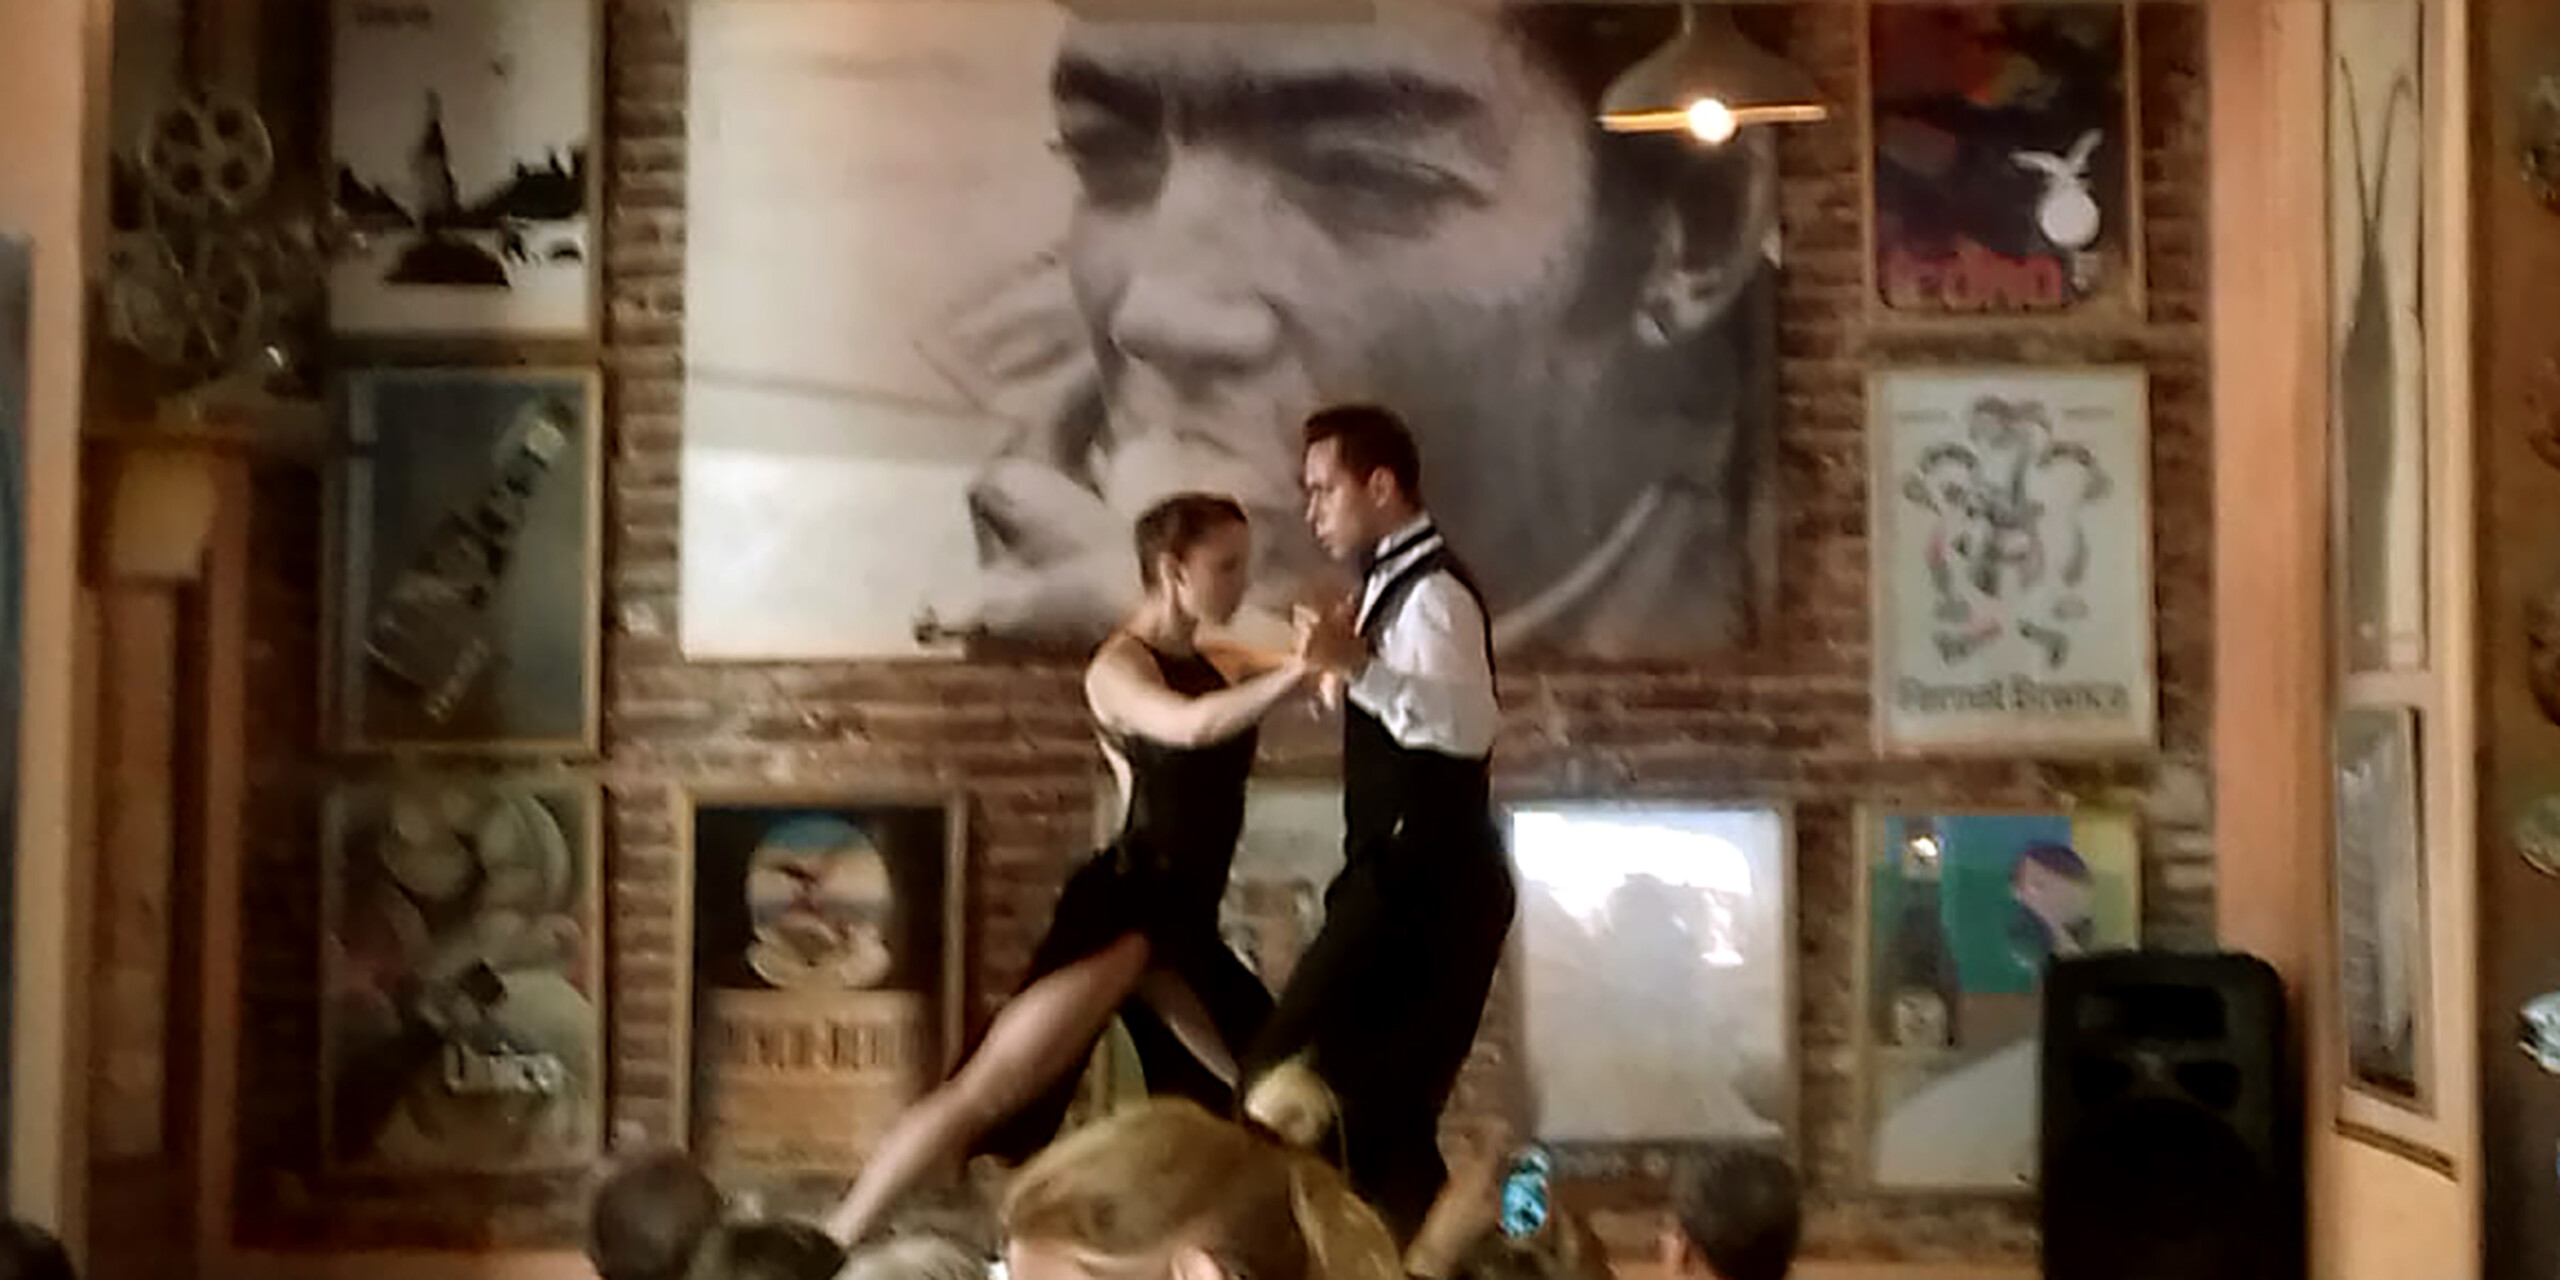 Os shows de tango são frequentes nos restaurantes de Buenos Aires